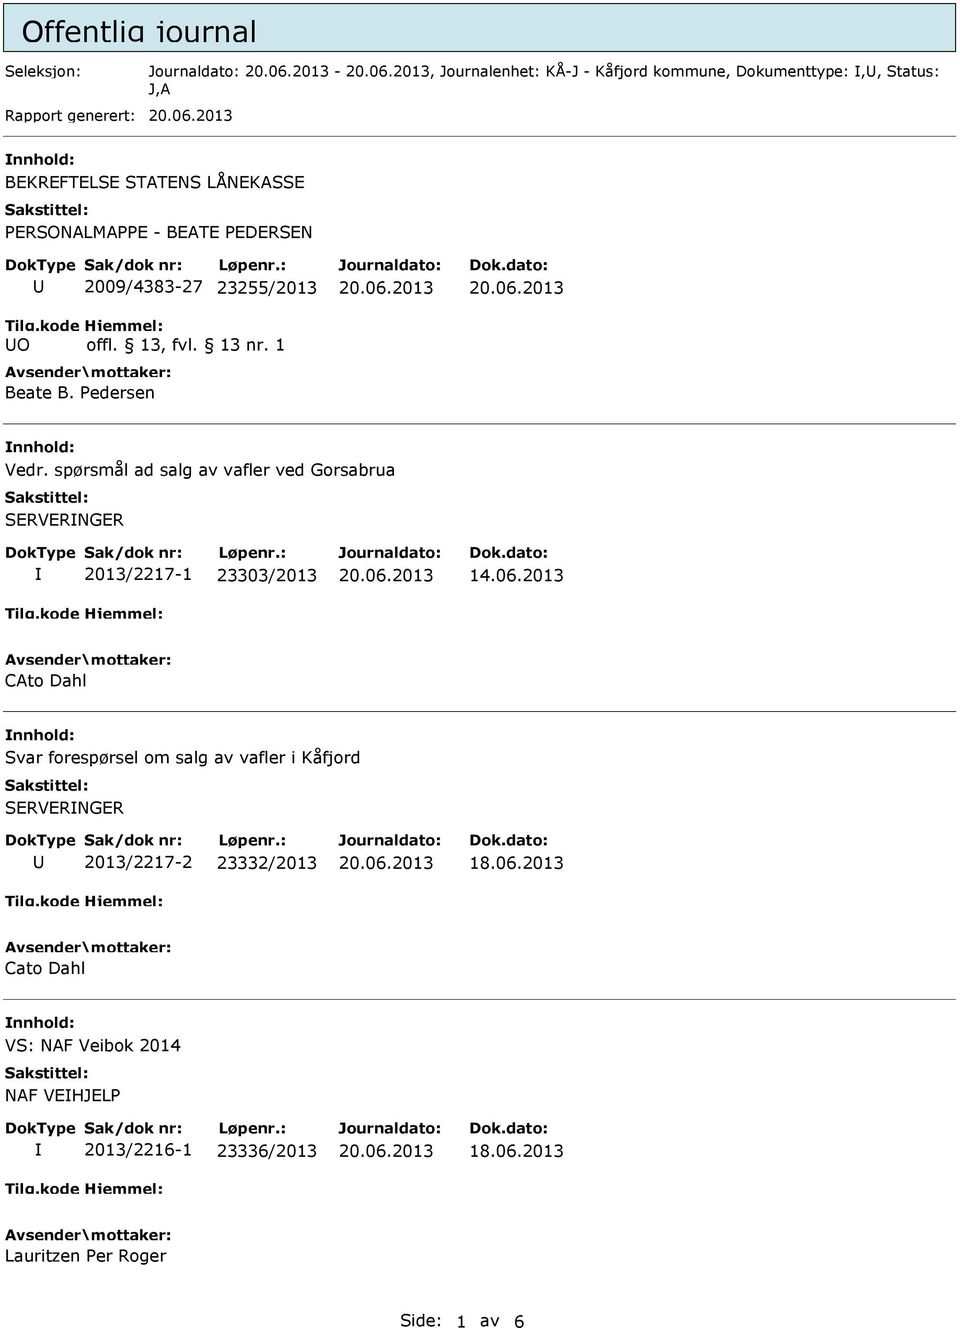 spørsmål ad salg av vafler ved Gorsabrua SERVERNGER 2013/2217-1 23303/2013 14.06.